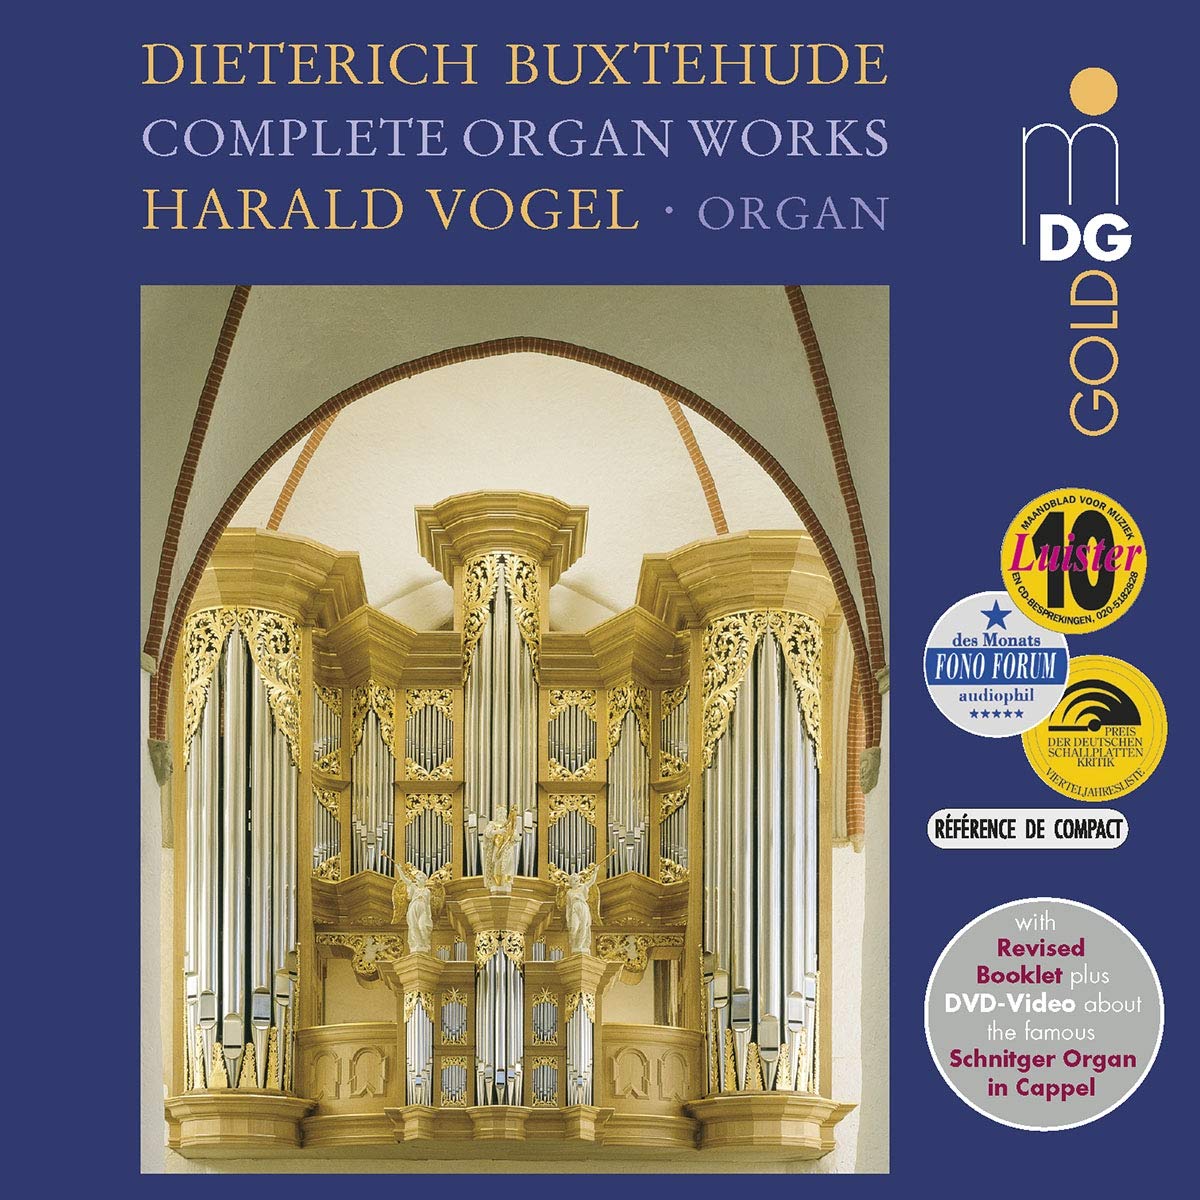 Audio Cd Dietrich Buxtehude - Complete Organ Works (7 Cd) NUOVO SIGILLATO, EDIZIONE DEL 20/09/2019 SUBITO DISPONIBILE